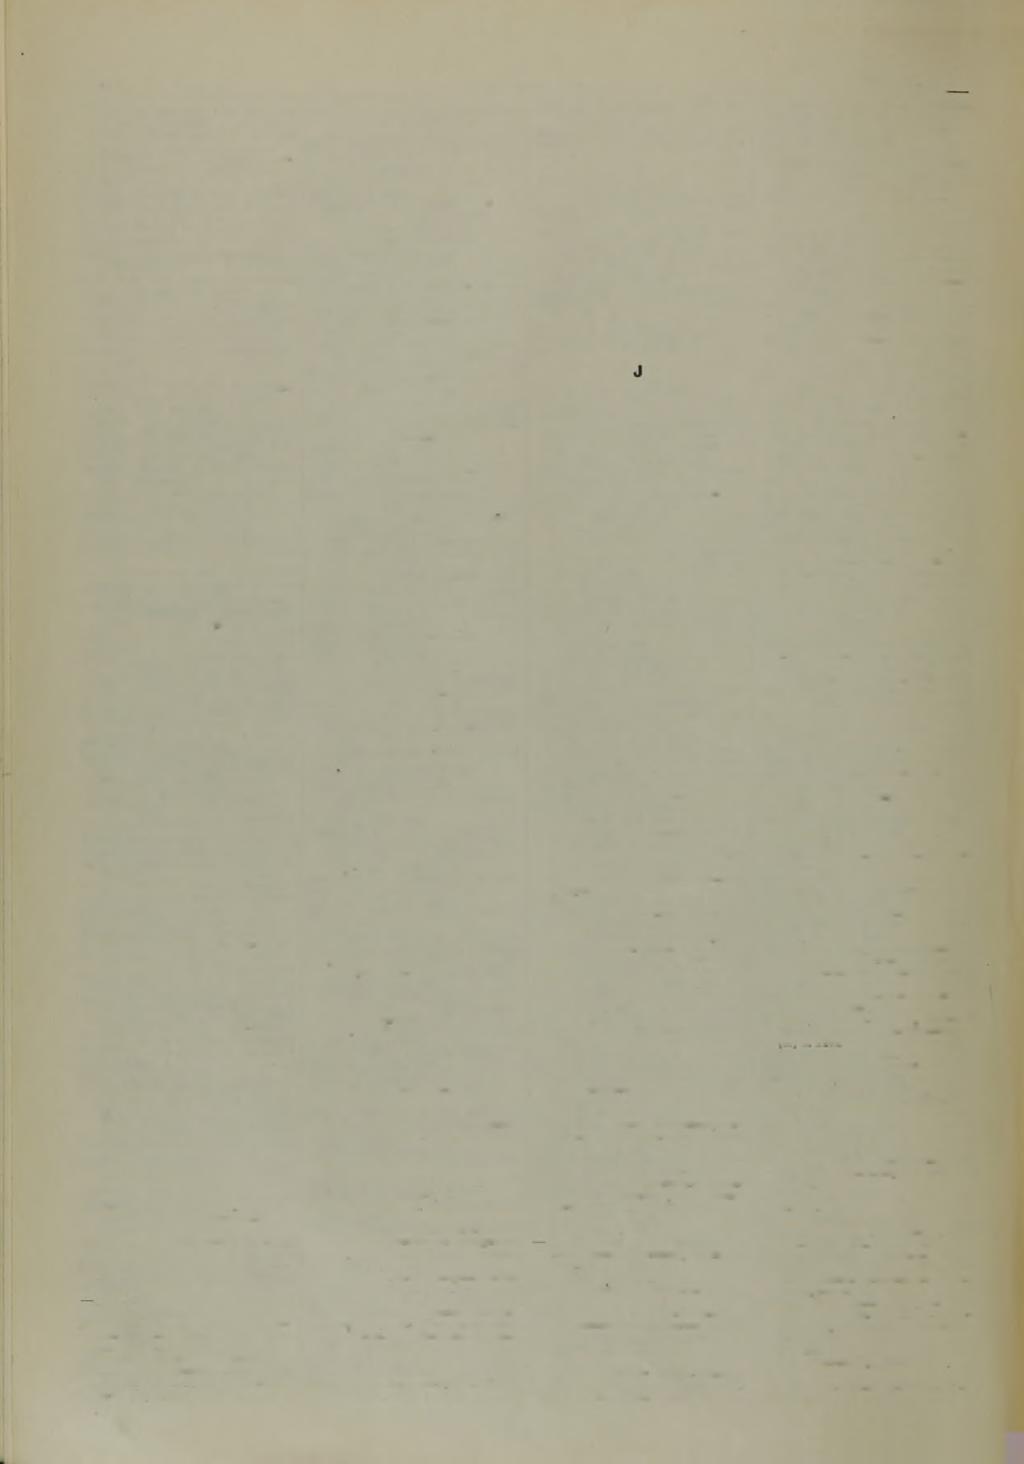 VI H a n - Verfasser Verzeichnis, Kii Jg. 1939. H anem ann, Heinrich, u. Angelica Schräder [Zs] 878 A tlas M etallographicus. Bd. 2 (Lfg.